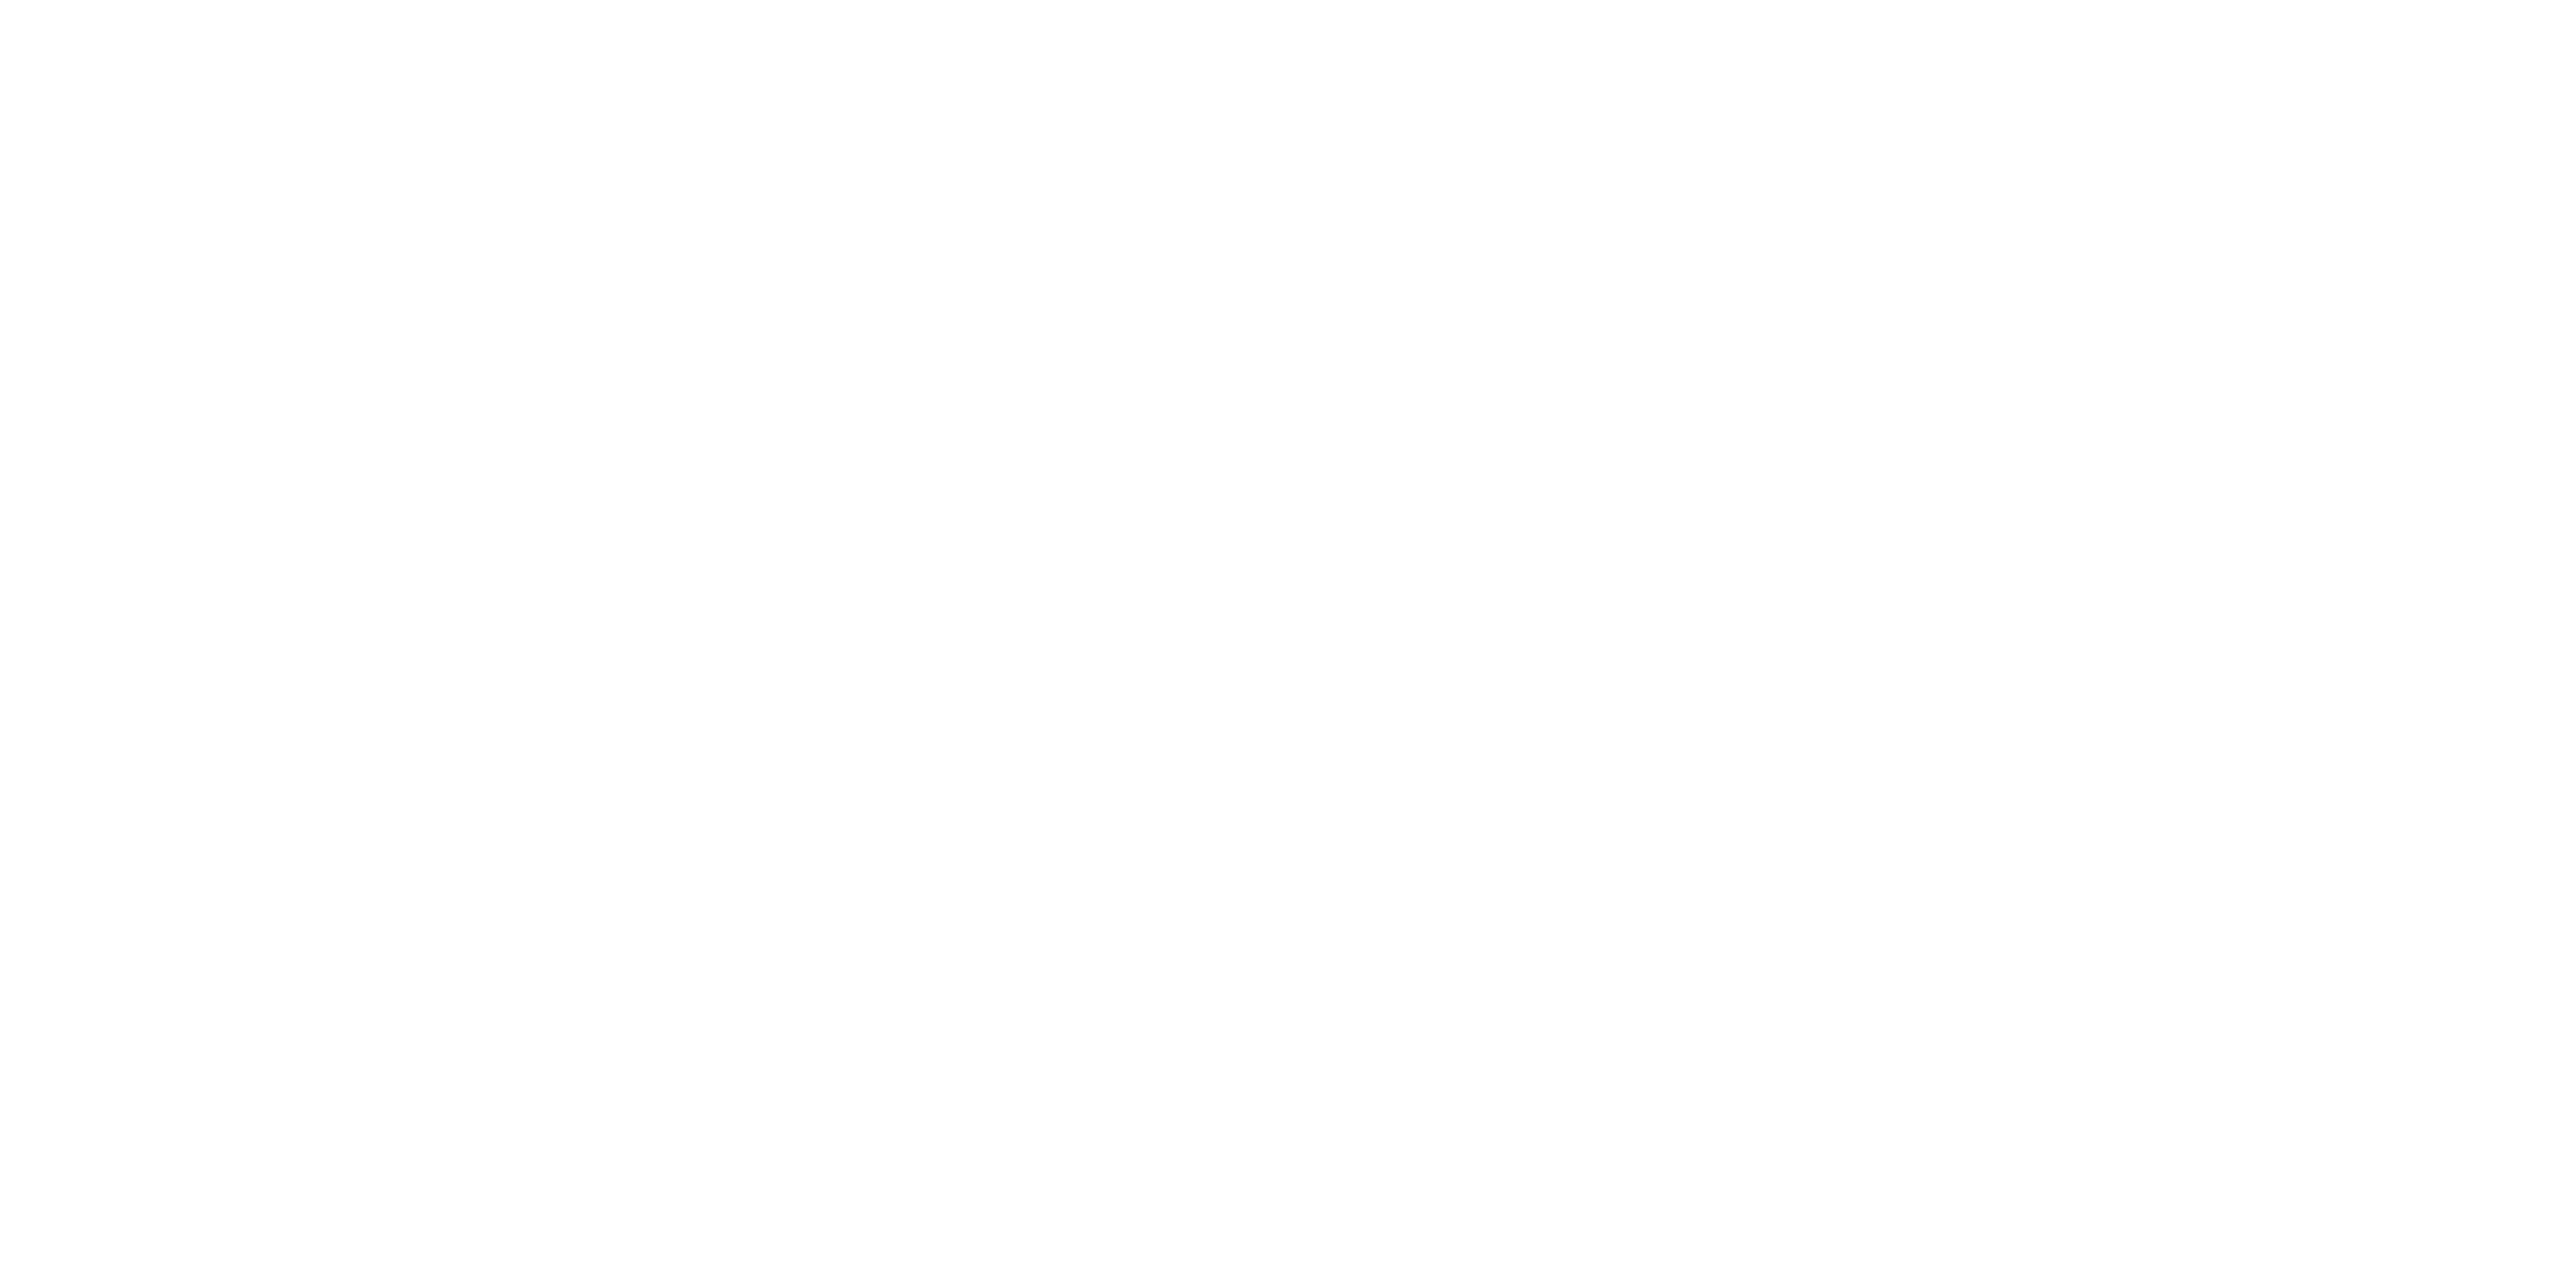 More.com